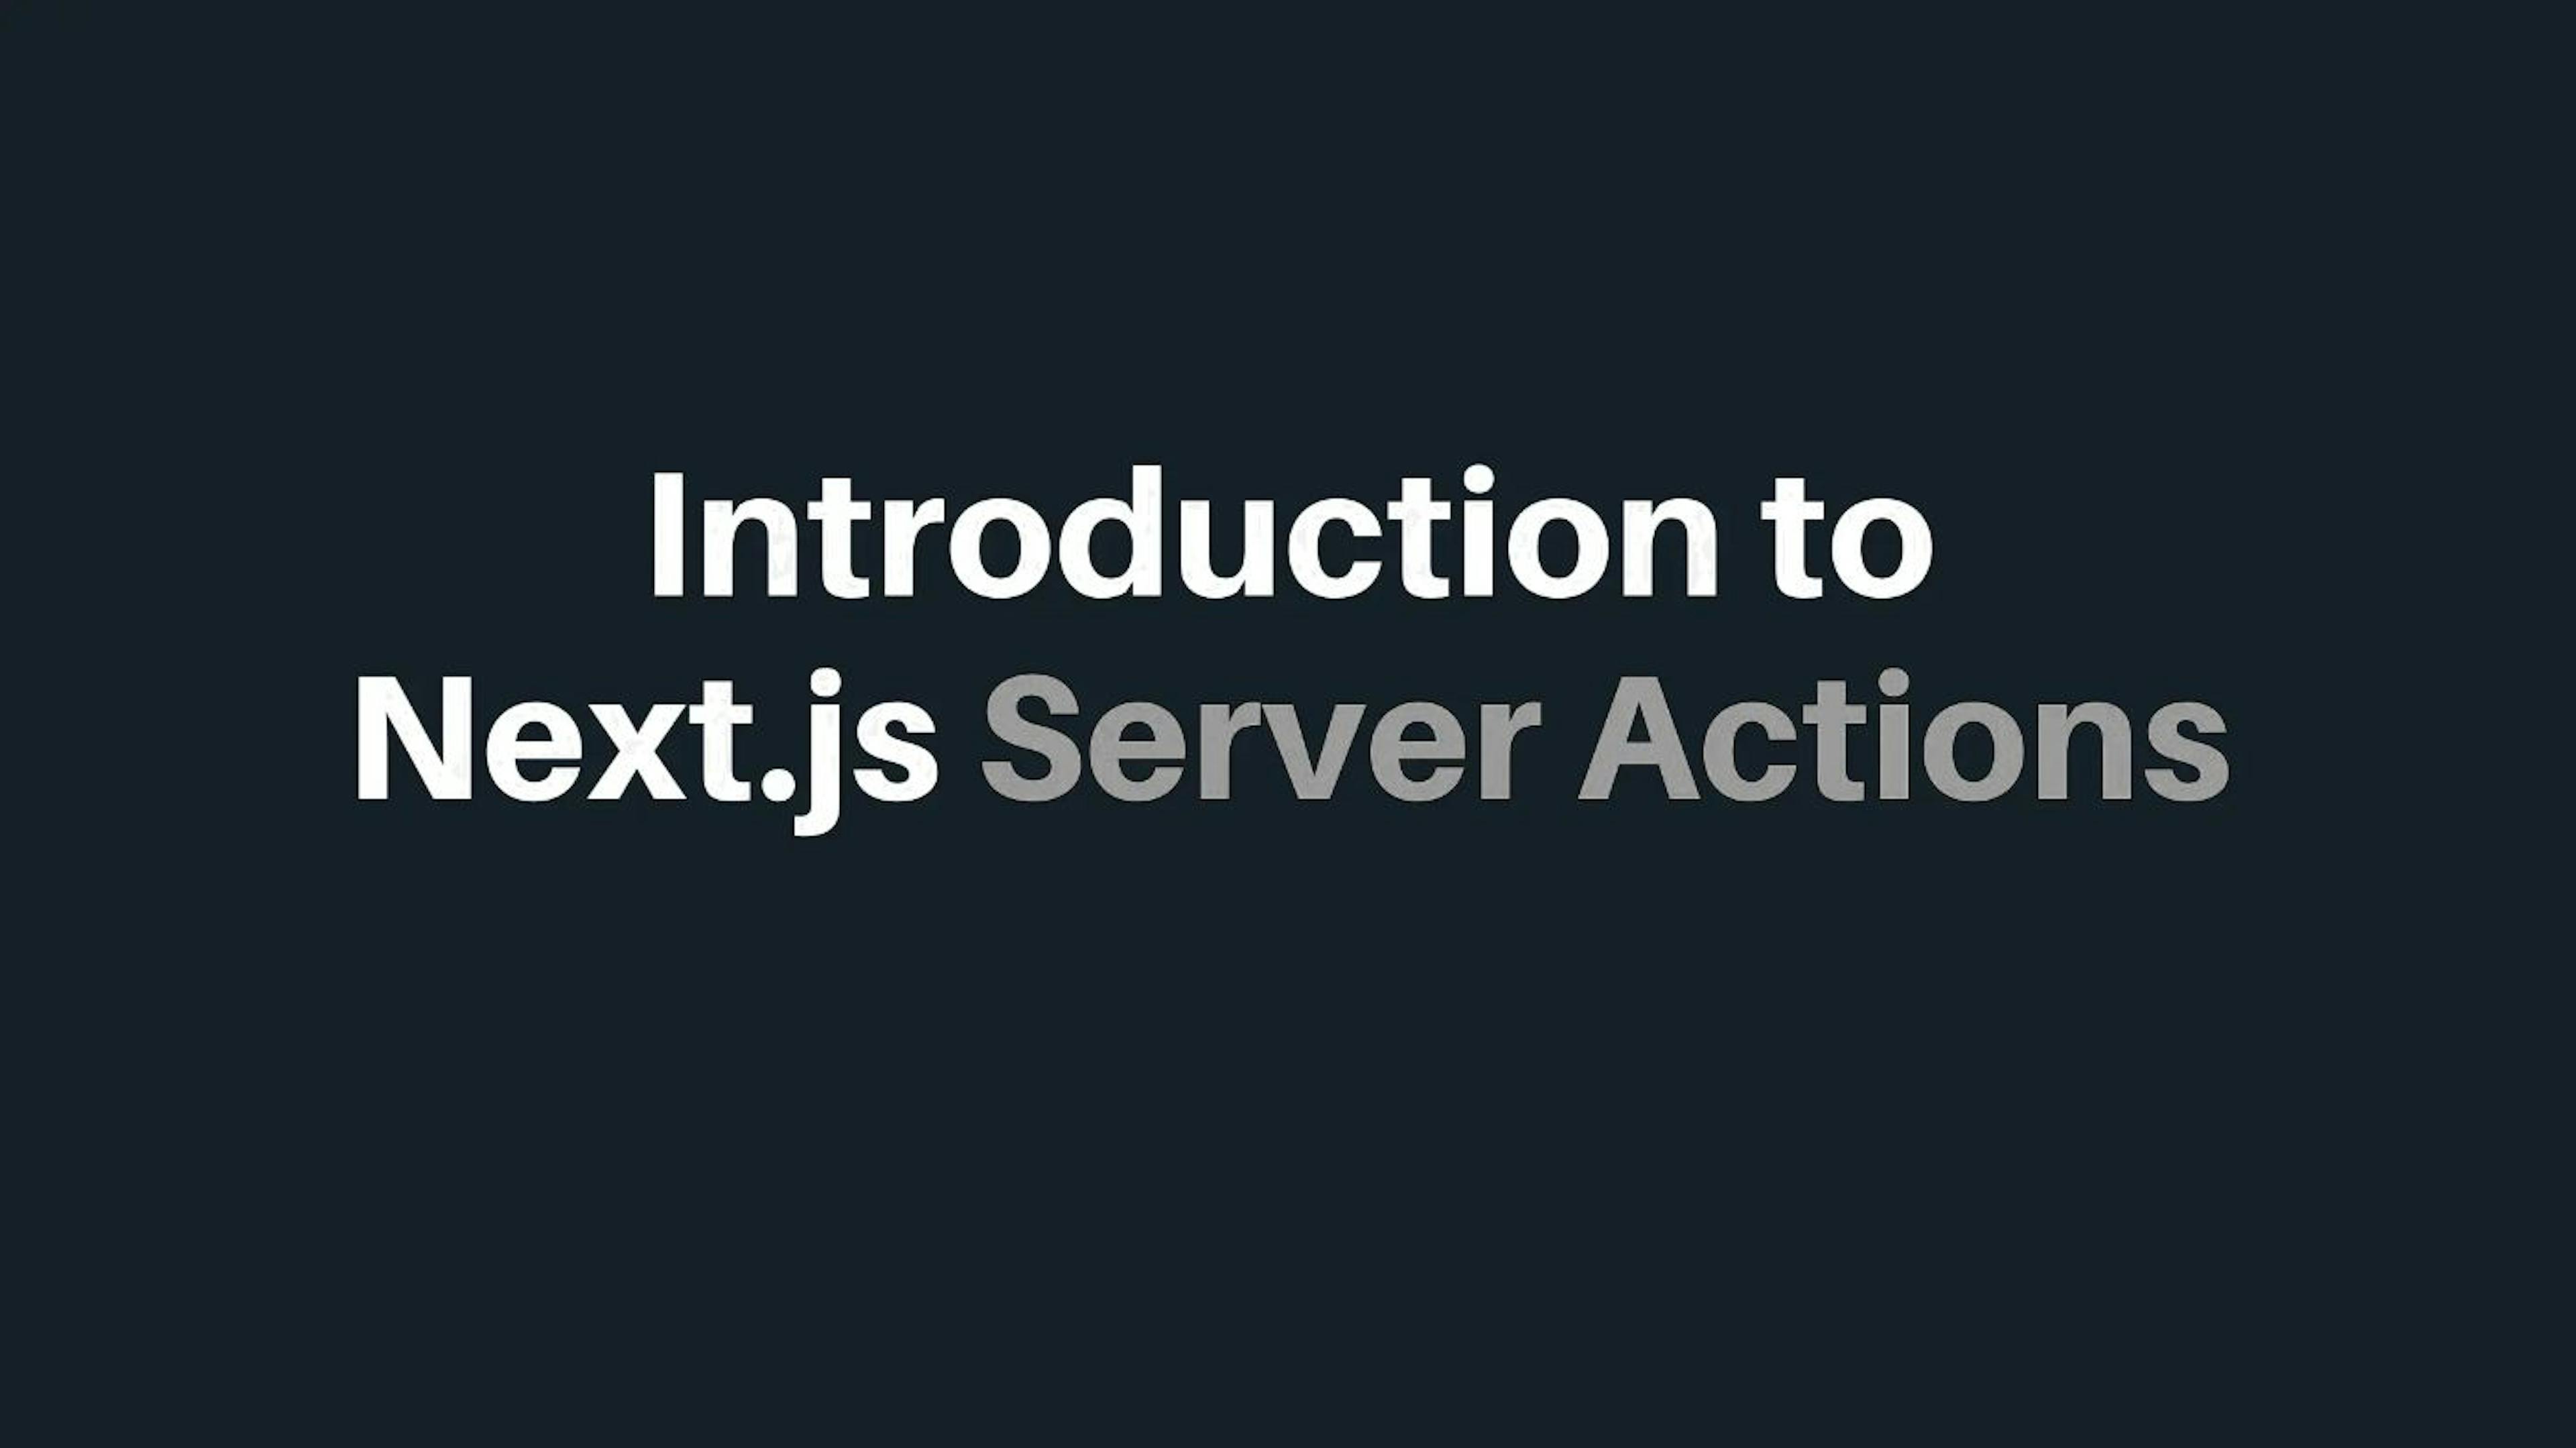 featured image - Construindo aplicativos em tempo real com Next.js 13.4 Server Actions

 1. Introdução](#...